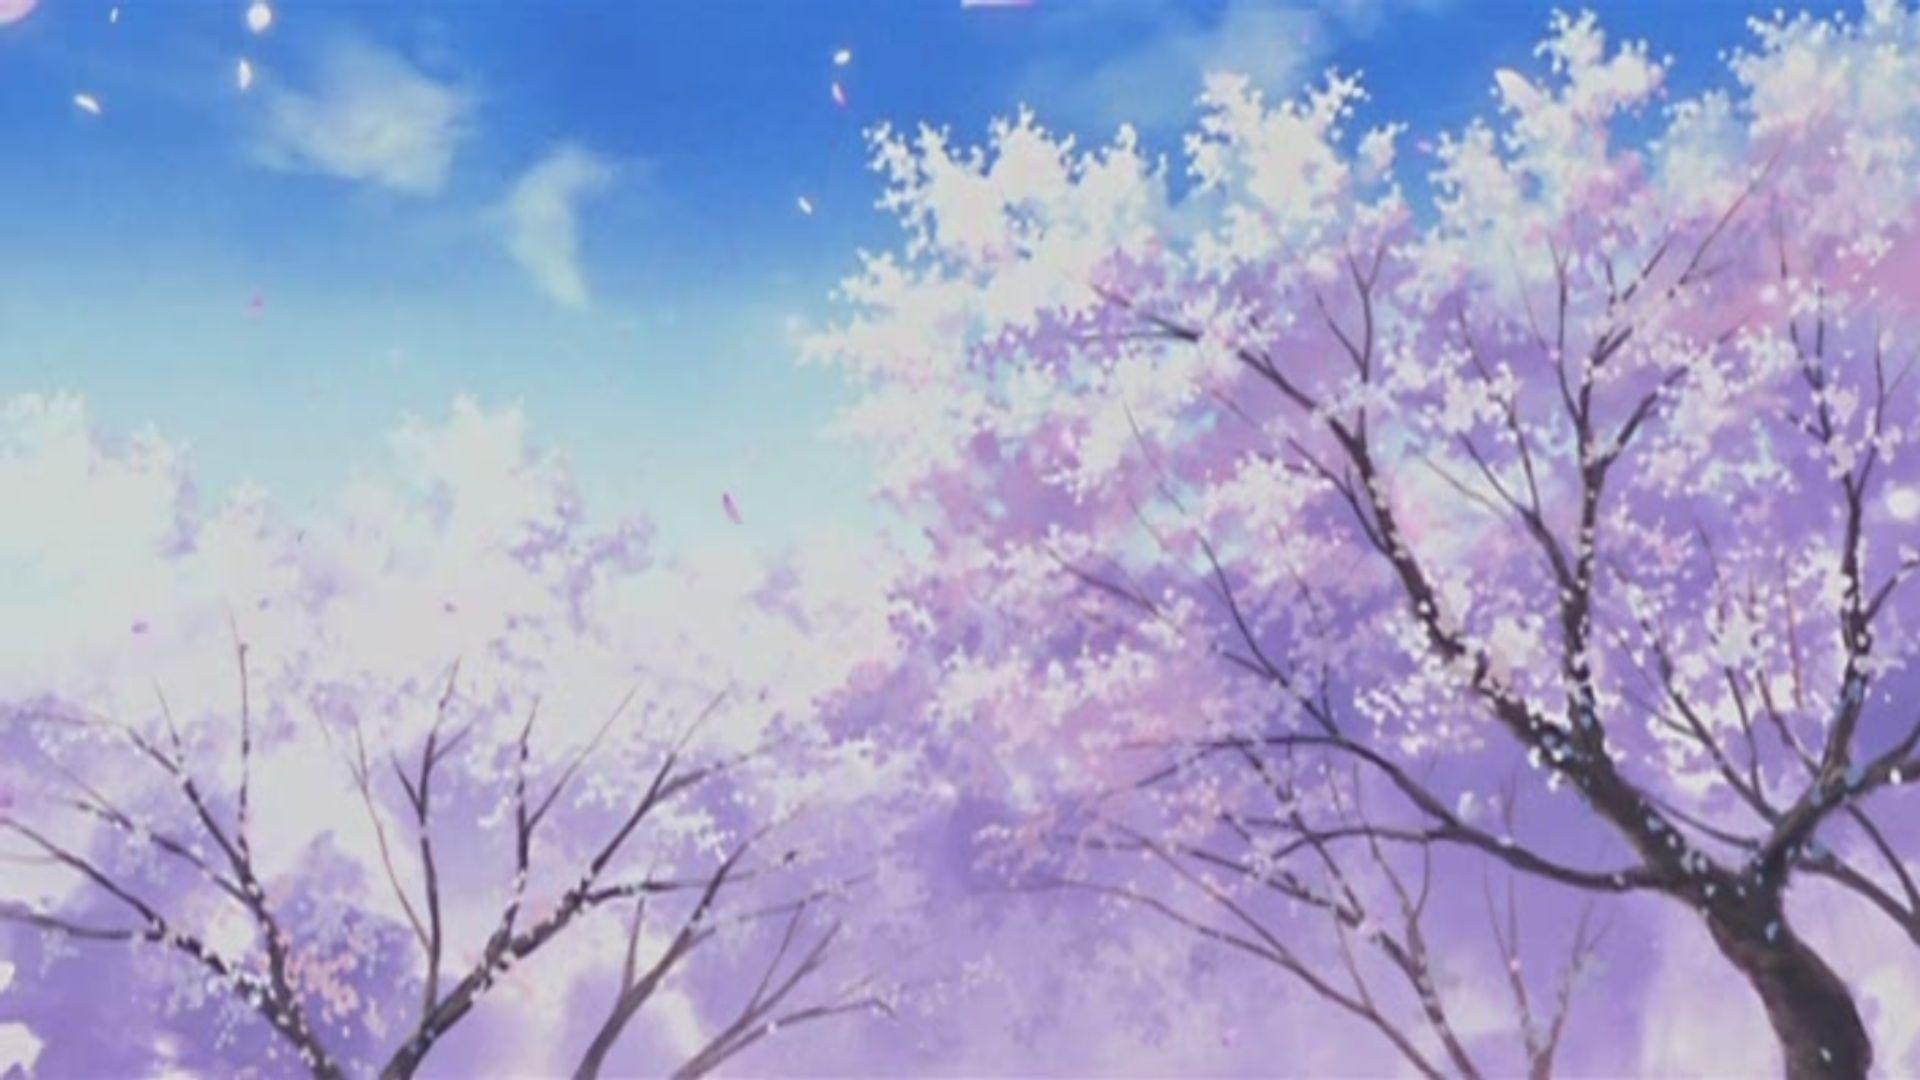 Anime Cherry Blossom Aesthetic Wallpaperwalpaperlist.com